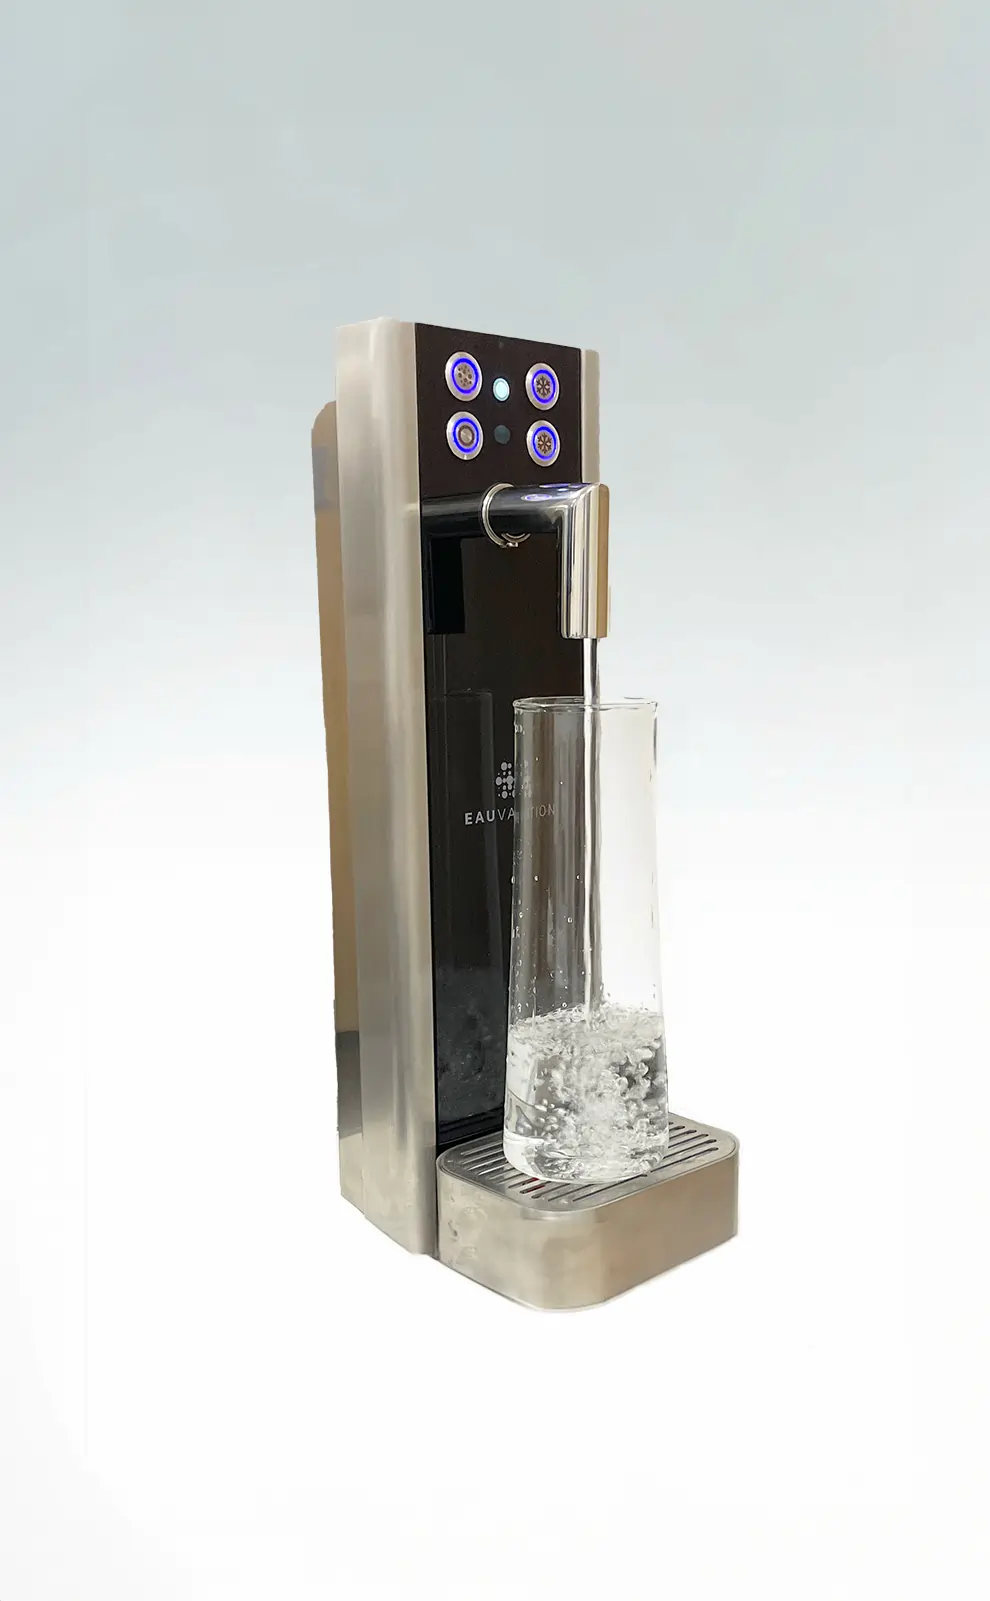 Trinkwasser per Knopfdruck mit Eauvation Wasserspender, dargestellt auf einem grau-weissen Hintergrund